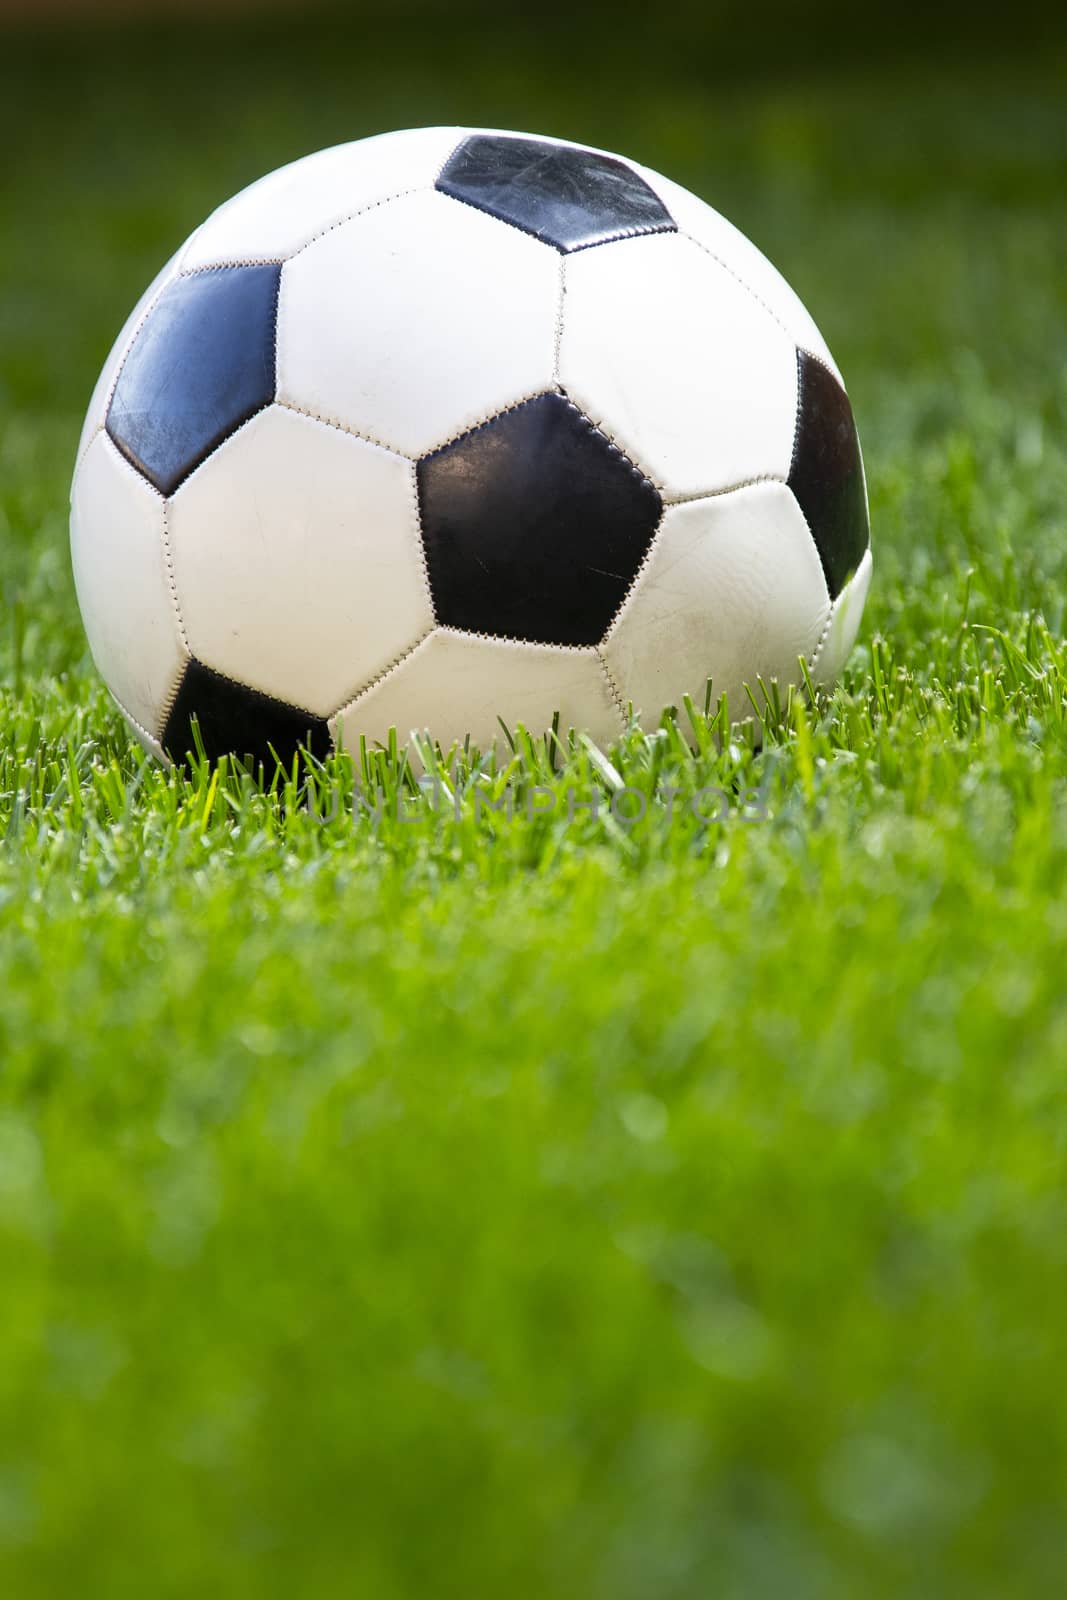 Football, soccer ball on a green grass